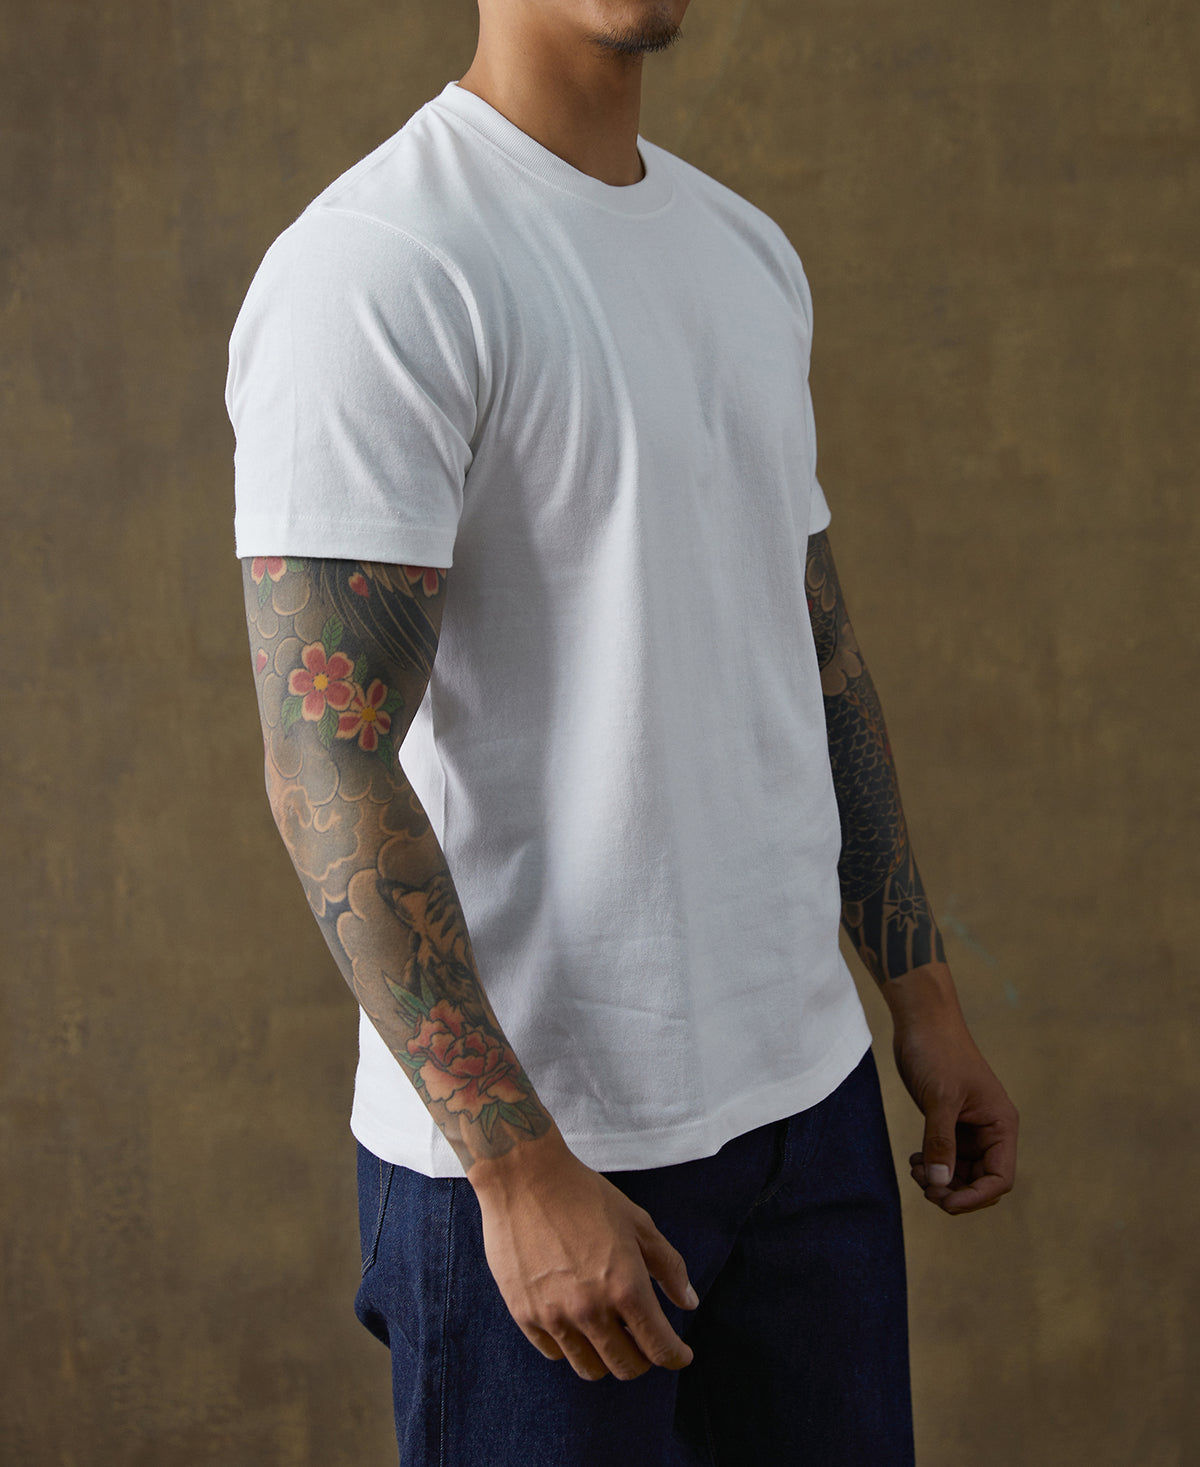 9 oz US Cotton Tubular T-Shirt - White